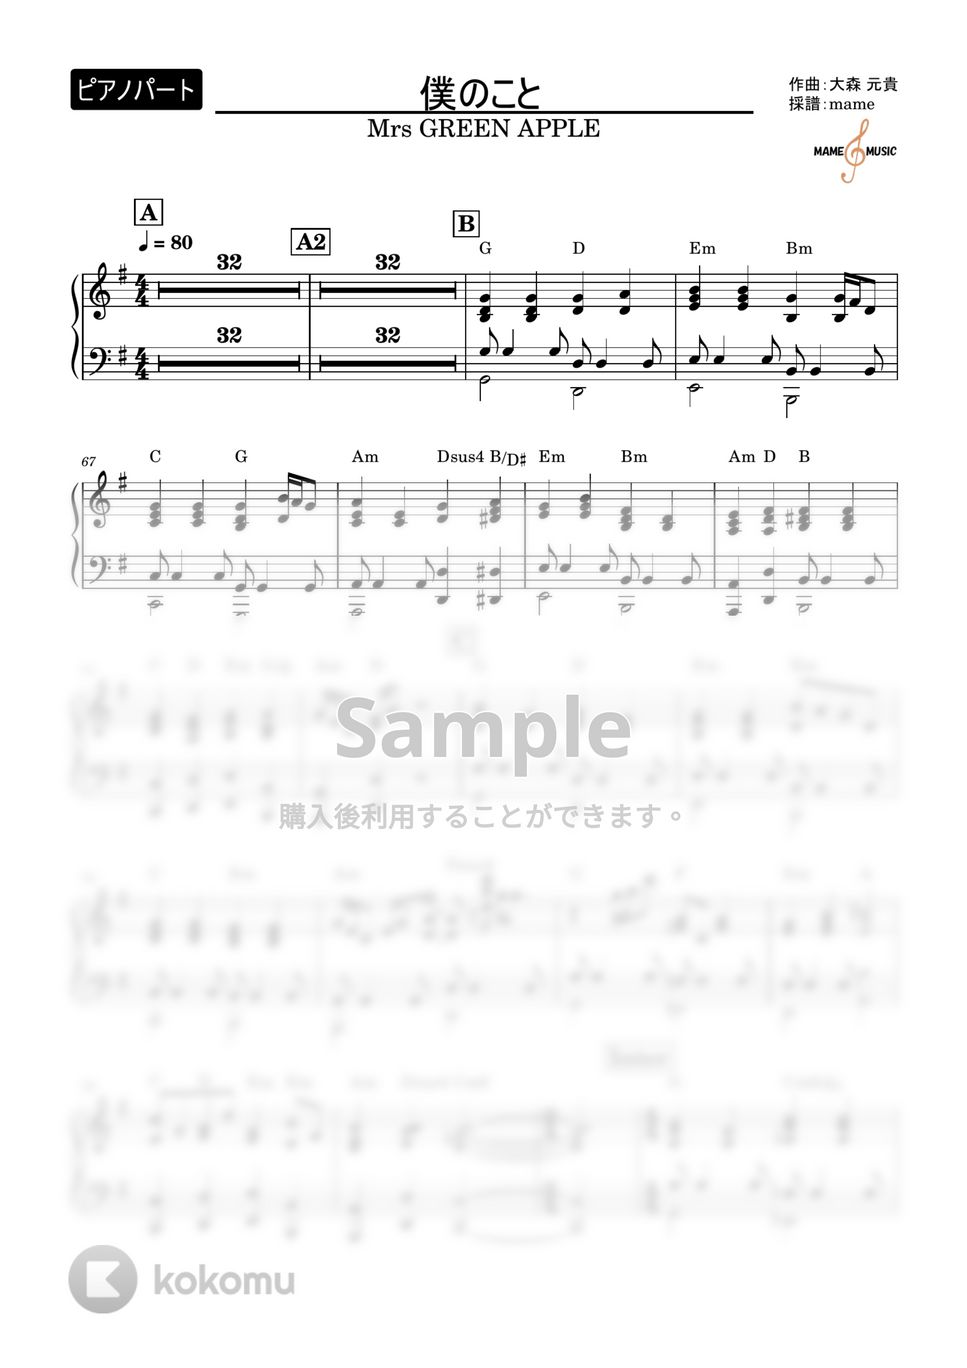 Mrs GREEN APPLE - 僕のこと (ピアノパート) by mame